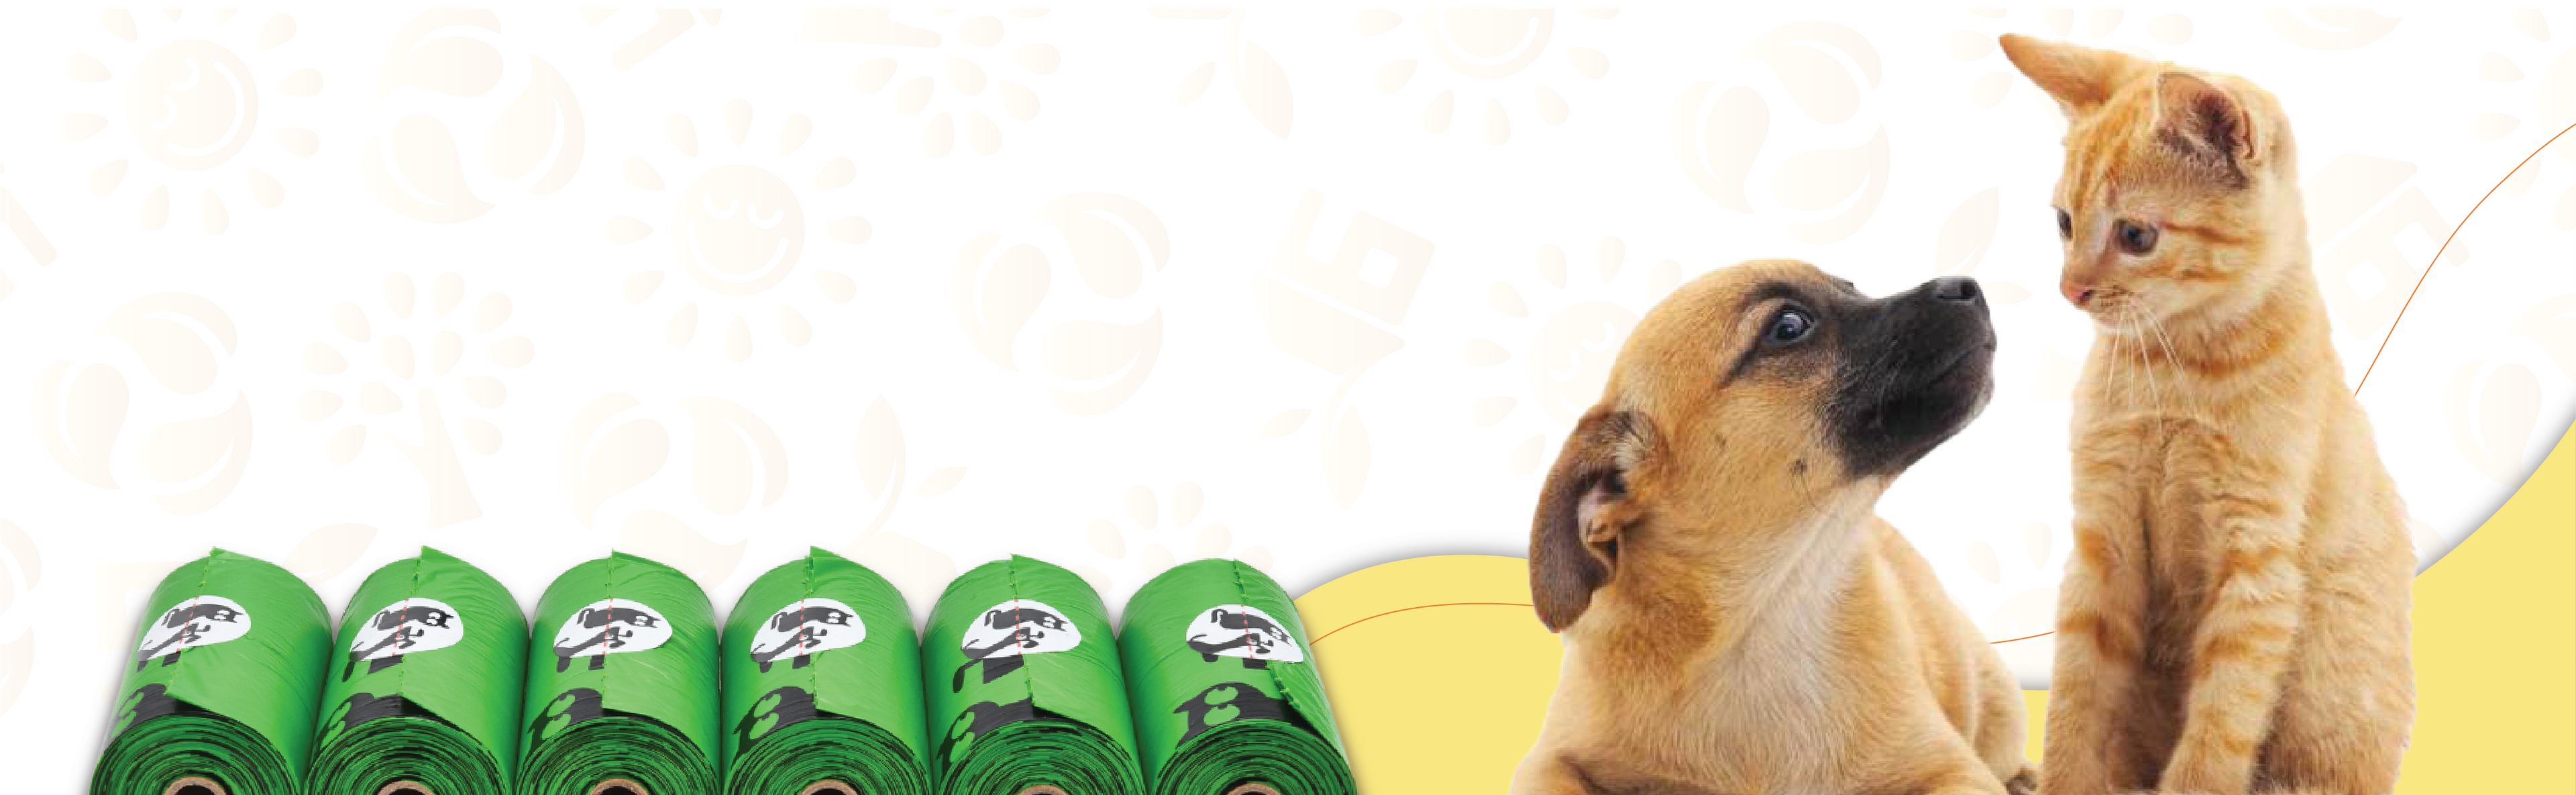 Pet N Pet Premium Pet Poop Bags 800 Counts Unscented Tie Handle Dog Waste  Poop Bags Green 4 Value Packs PNP-Handle-800 - The Home Depot